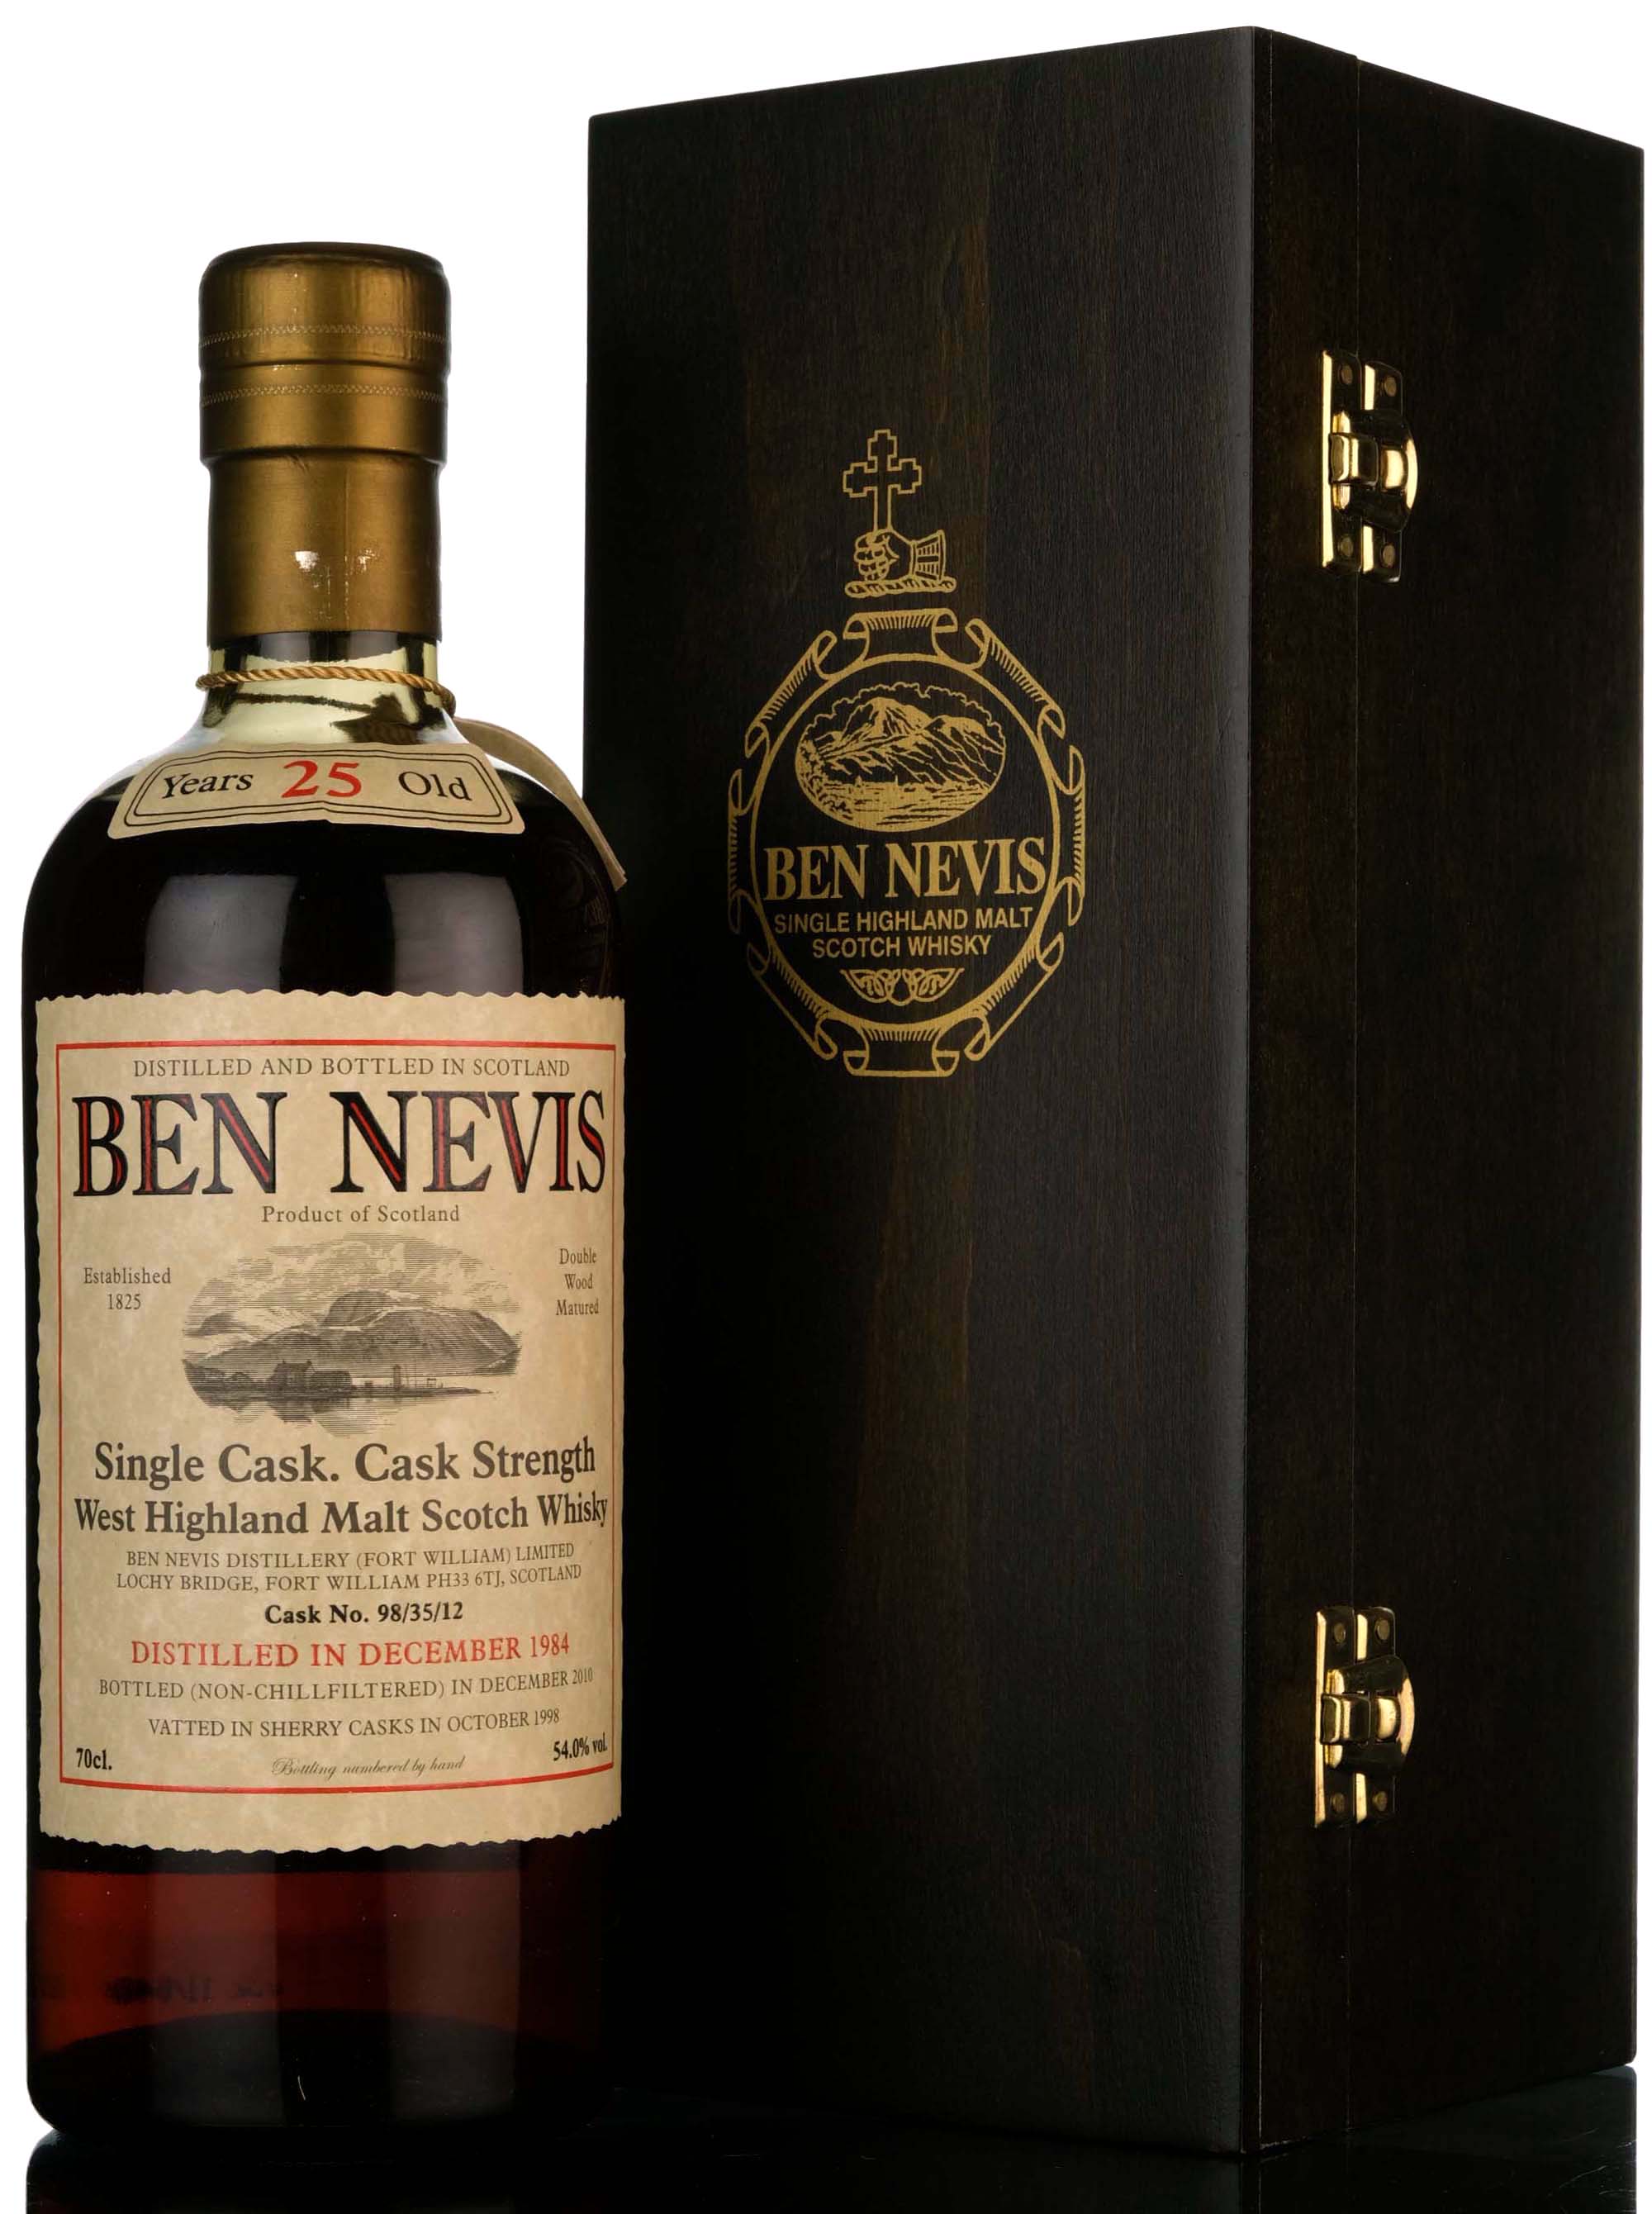 Ben Nevis 1984-2010 - 25 Year Old - Single Cask 98/35/12